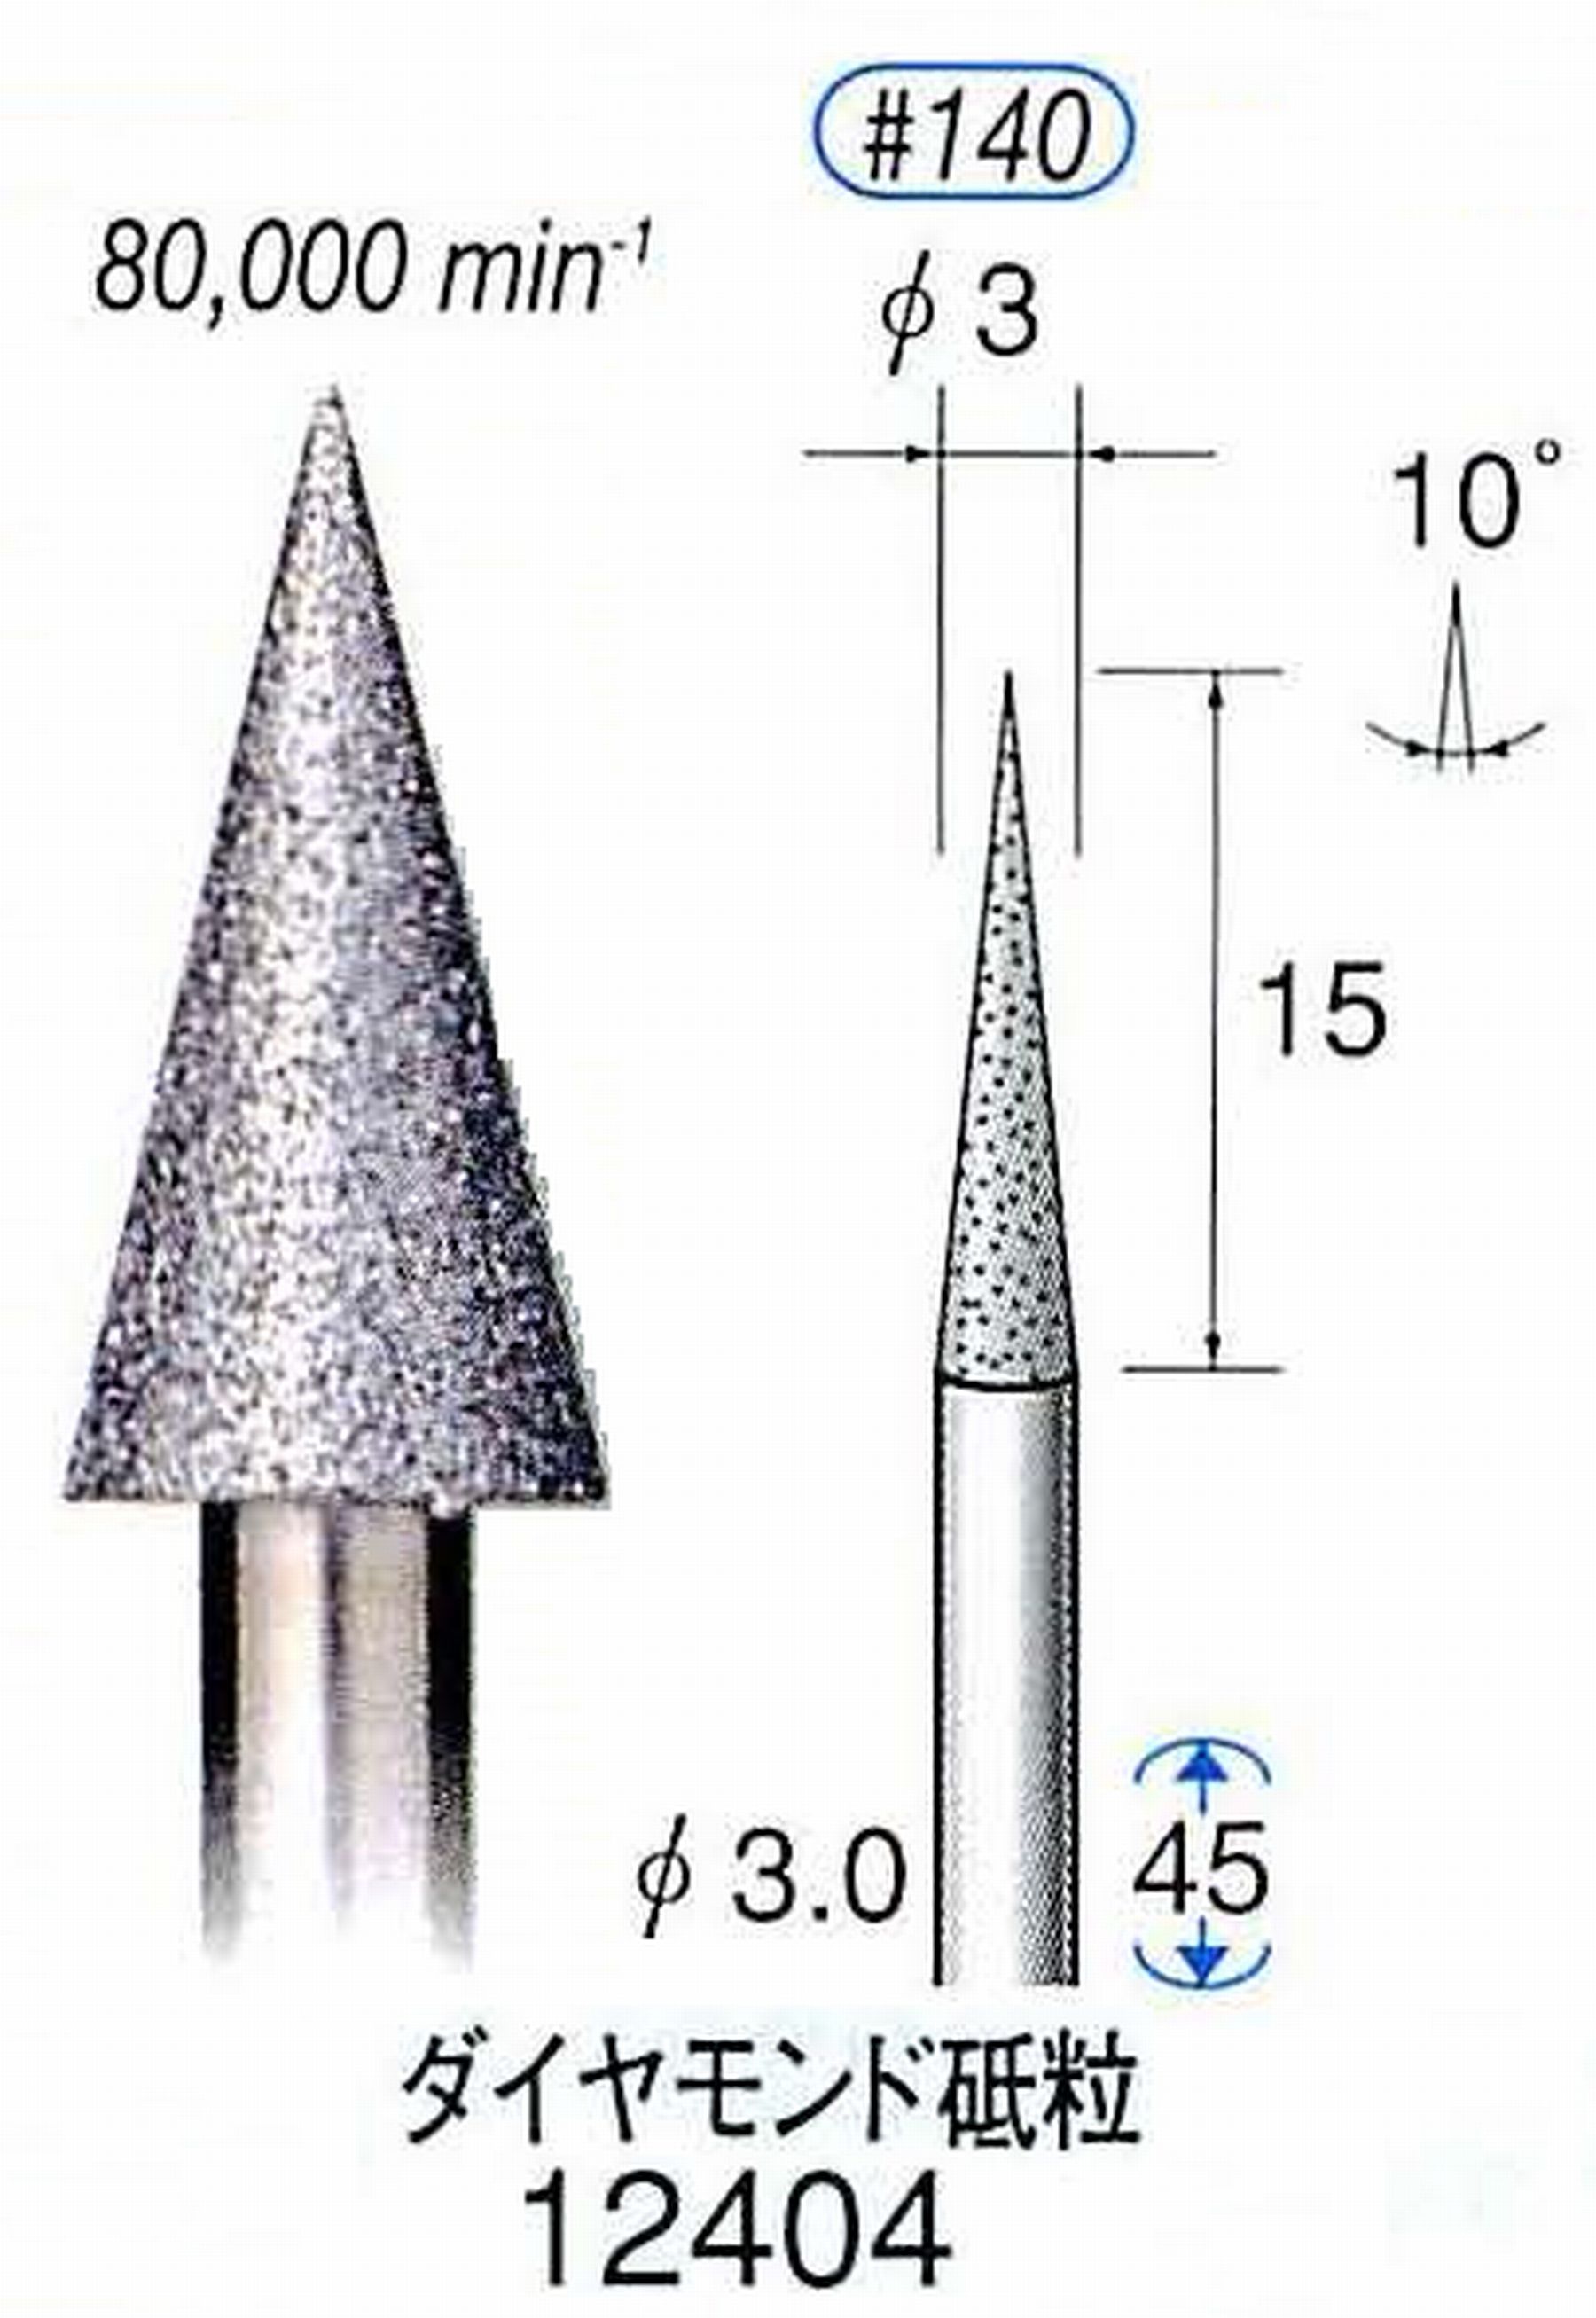 ナカニシ/NAKANISHI 電着ダイヤモンド ダイヤモンド砥粒 軸径(シャンク)φ3.0mm 12404